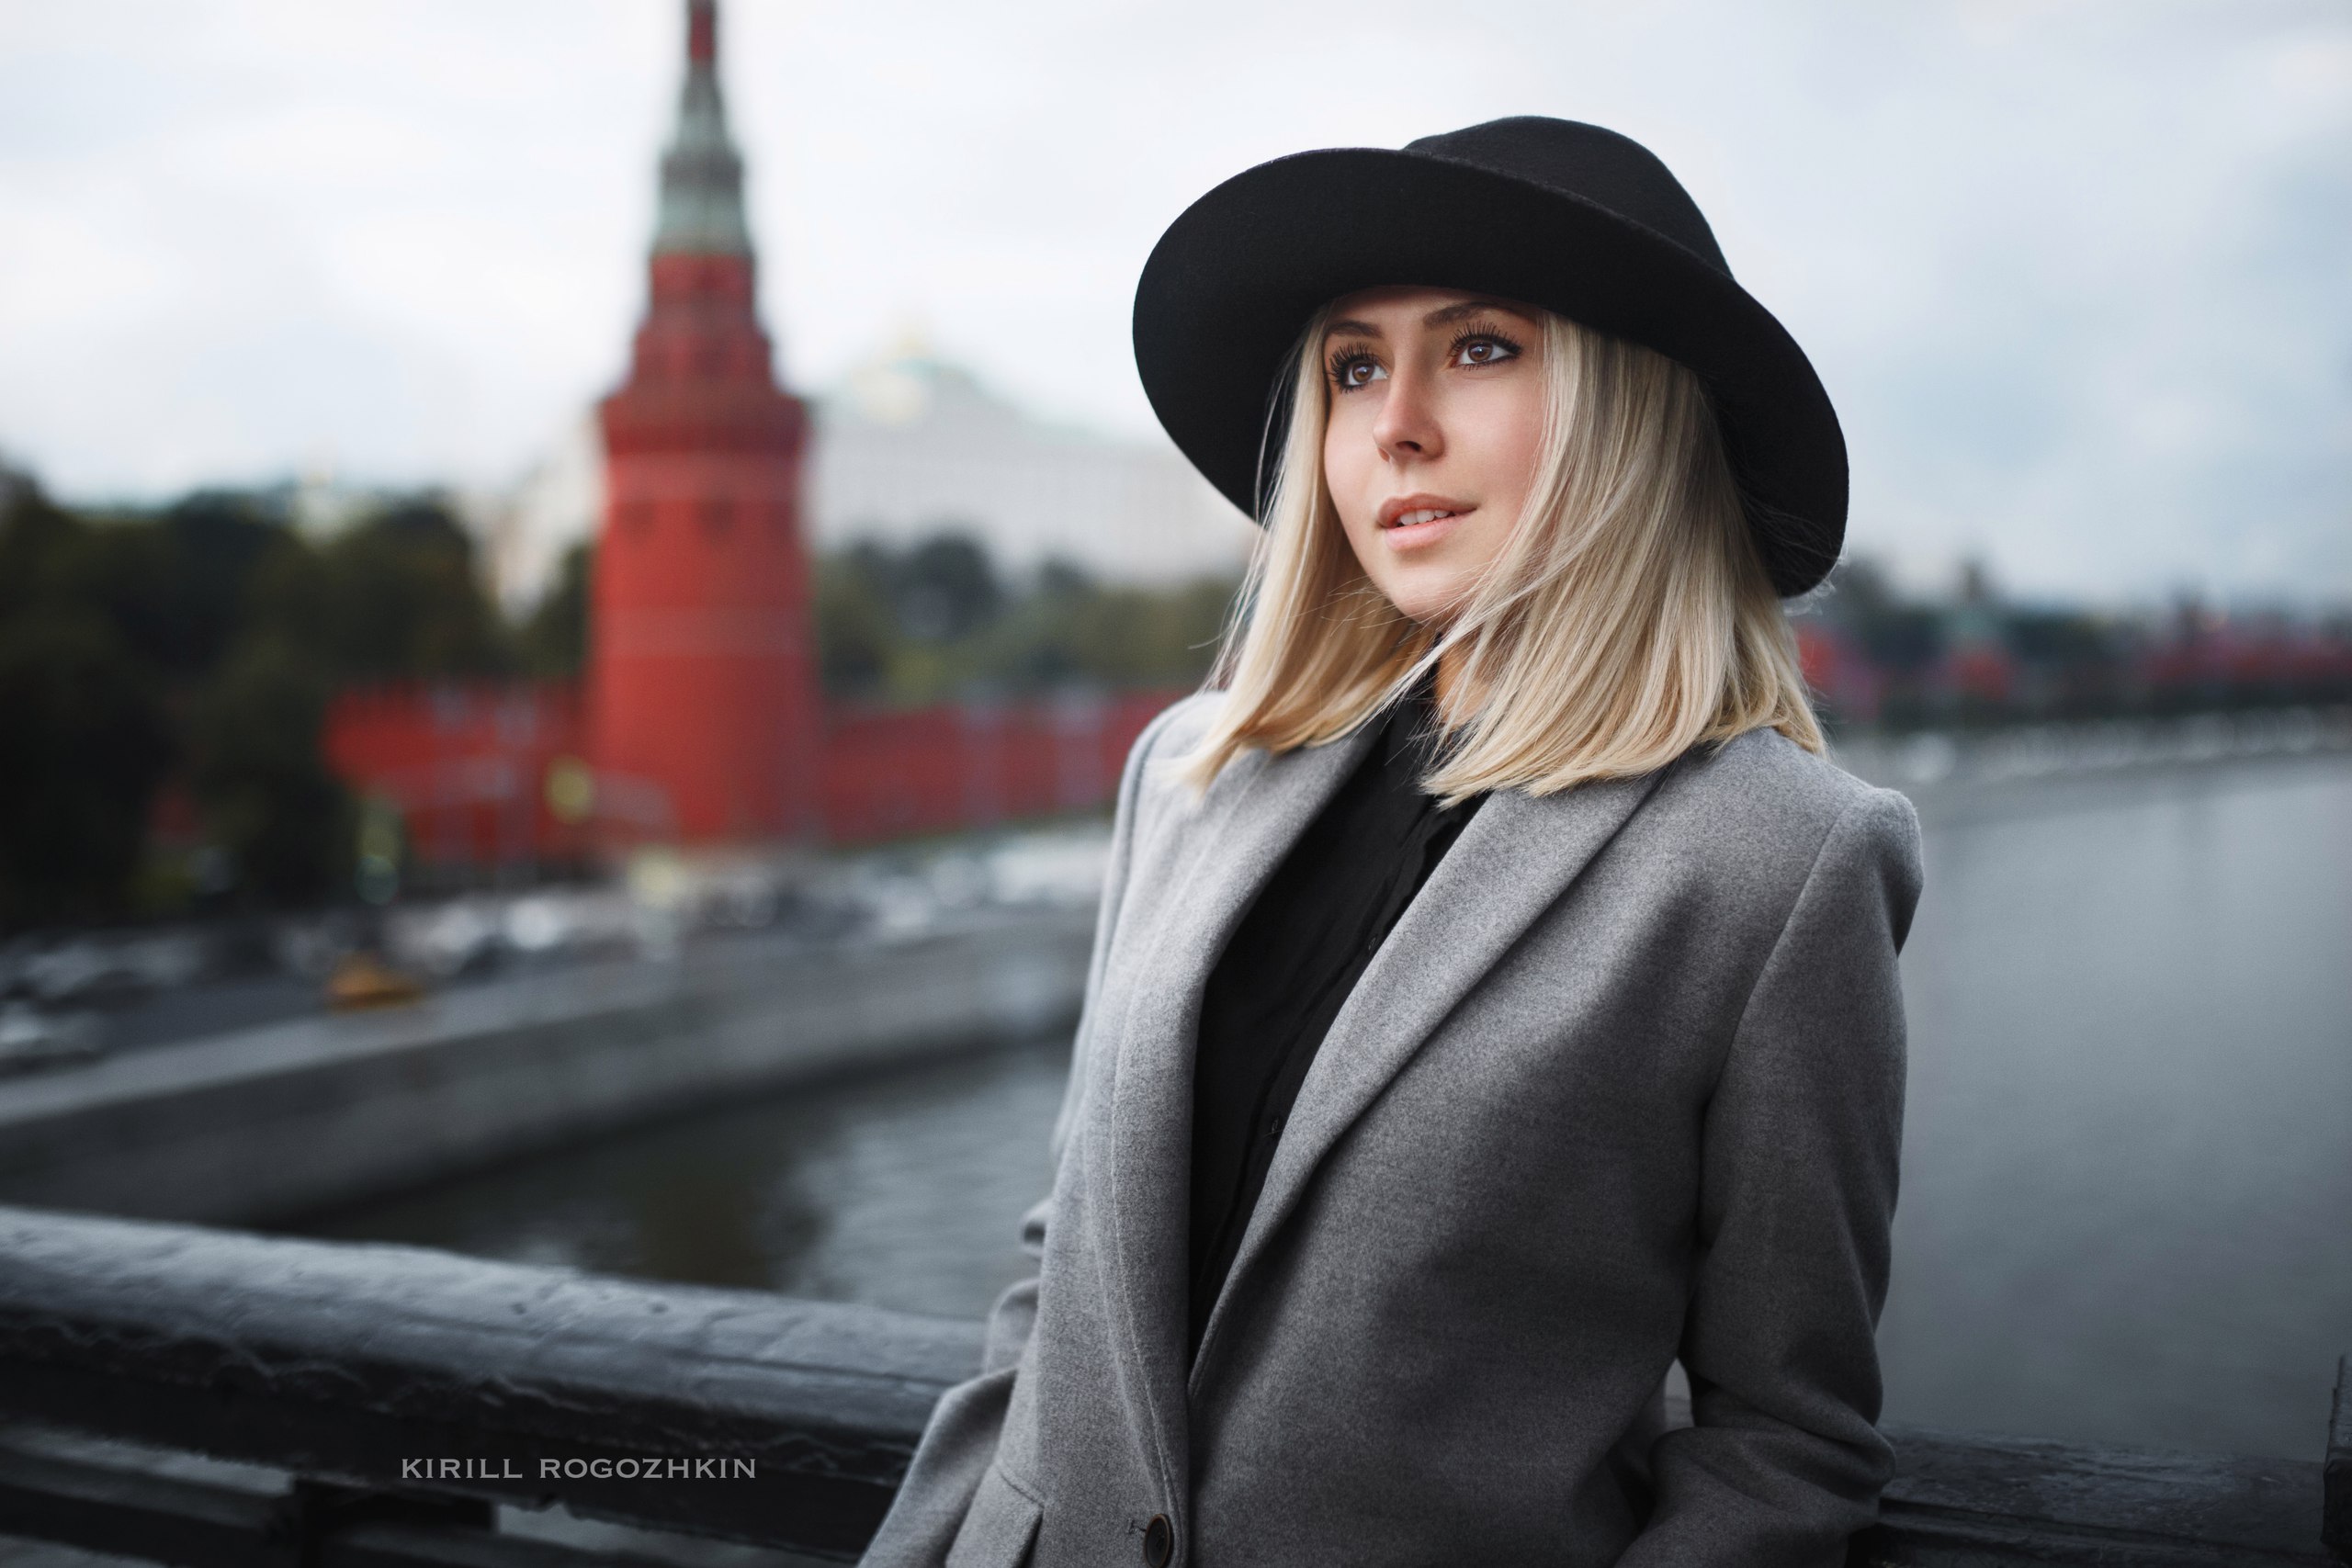 People 2560x1707 women model Kirill Rogozhkin cityscape hat women outdoors blonde grey coat coats Moscow Kremlin black hat balcony women with hats millinery Russia